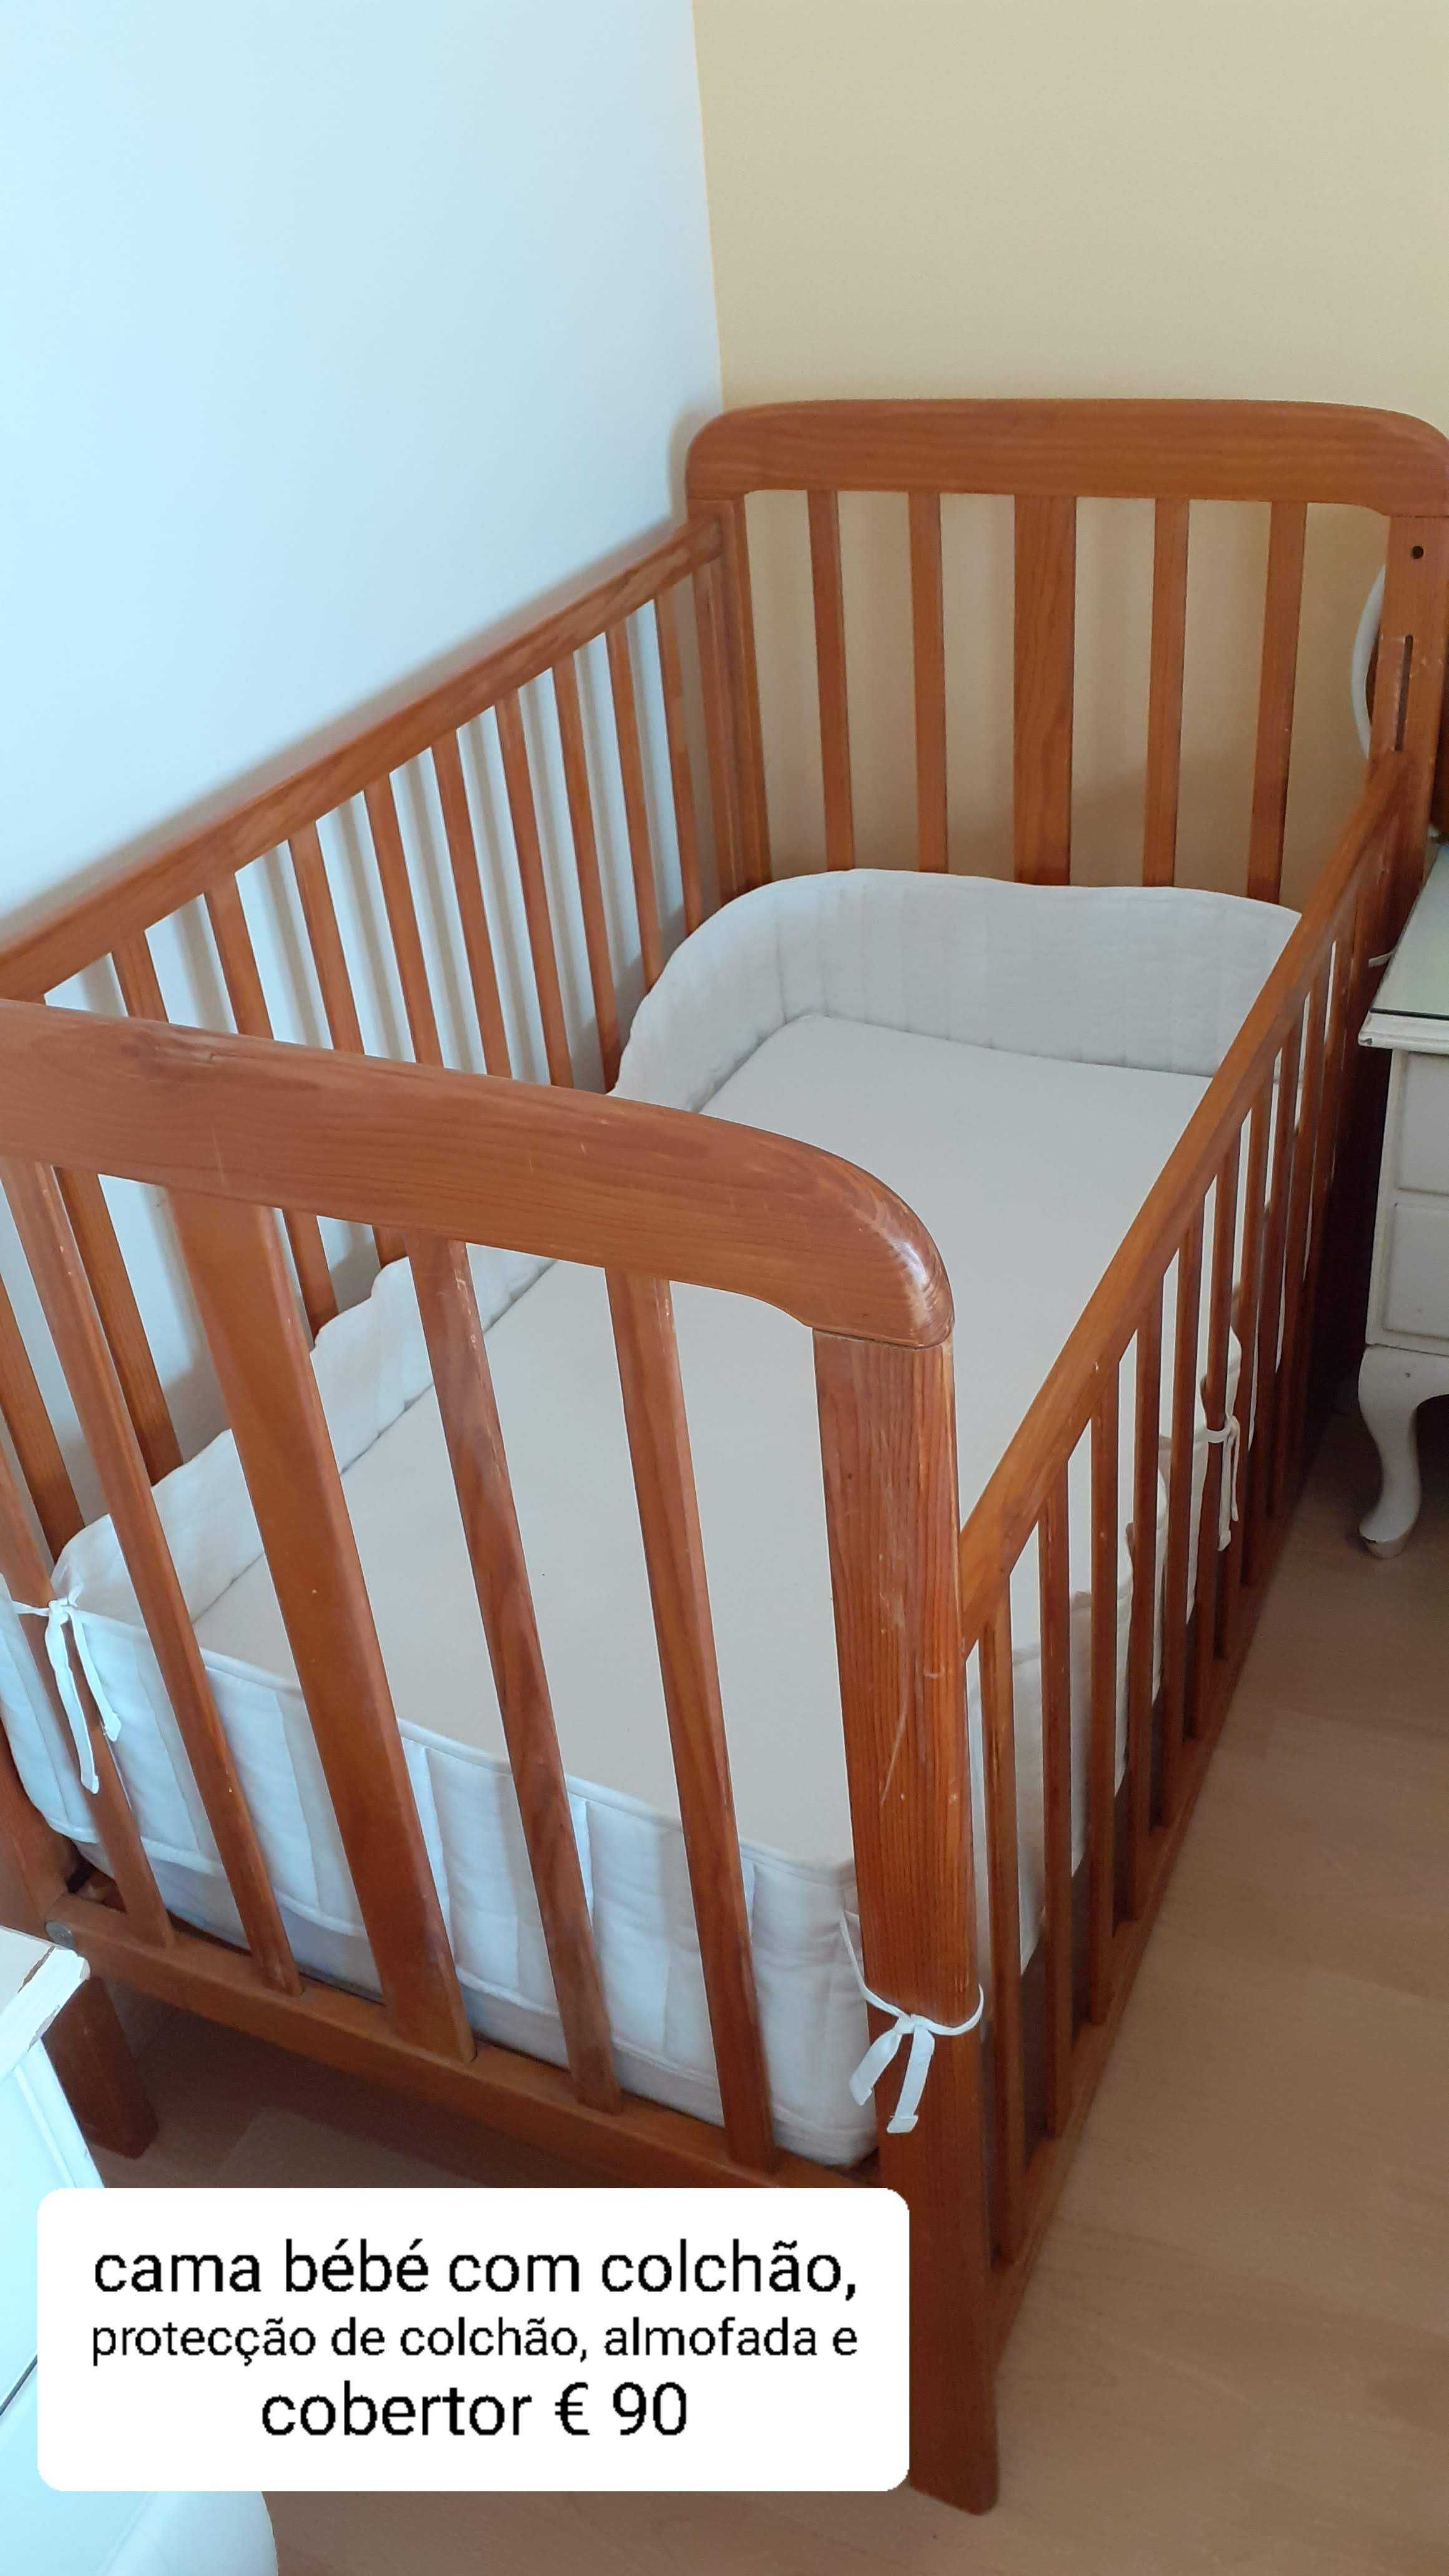 Duas camas de bébé